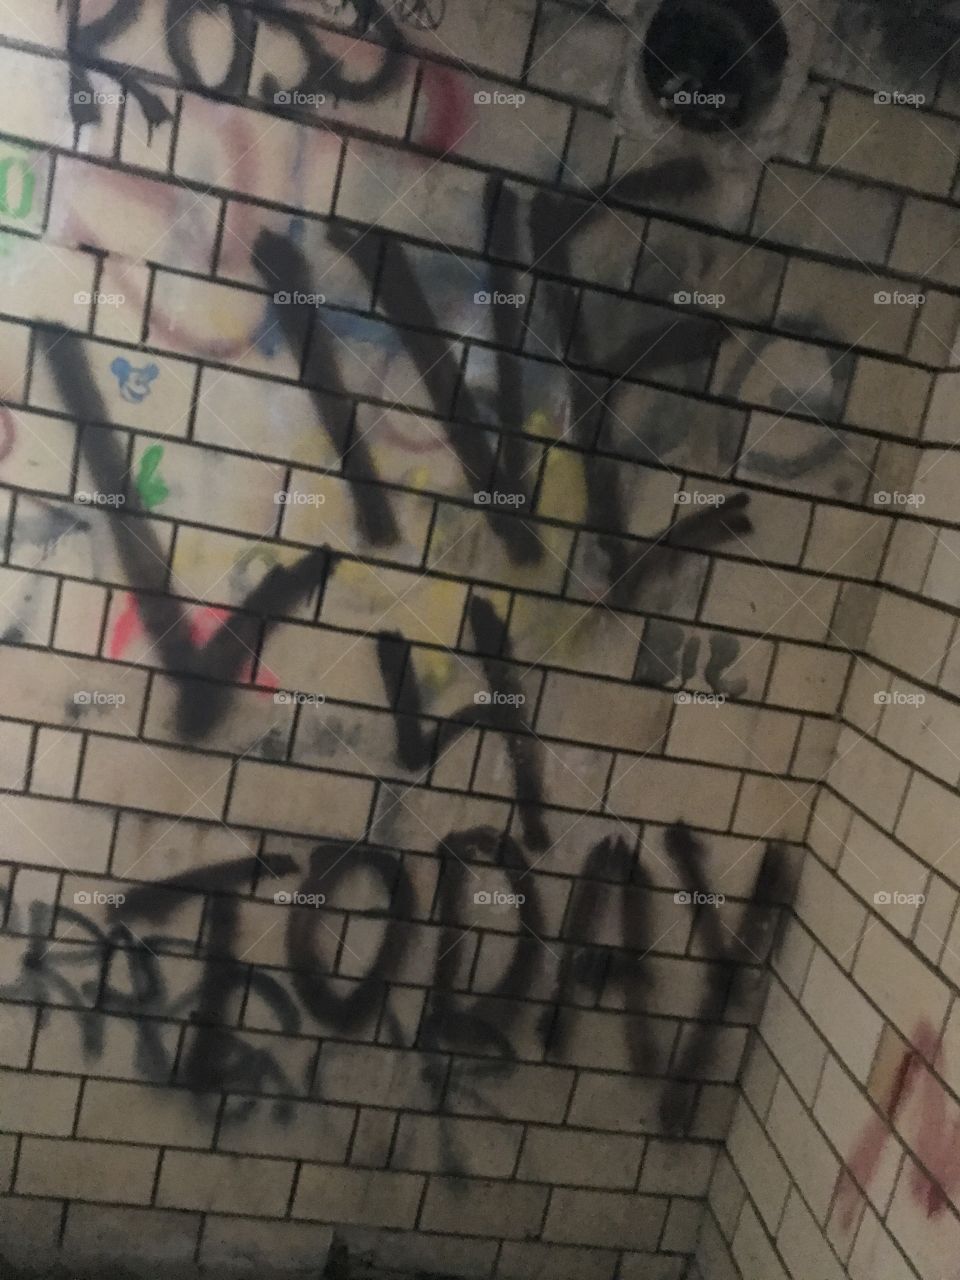 Graffiti in Fort Revere